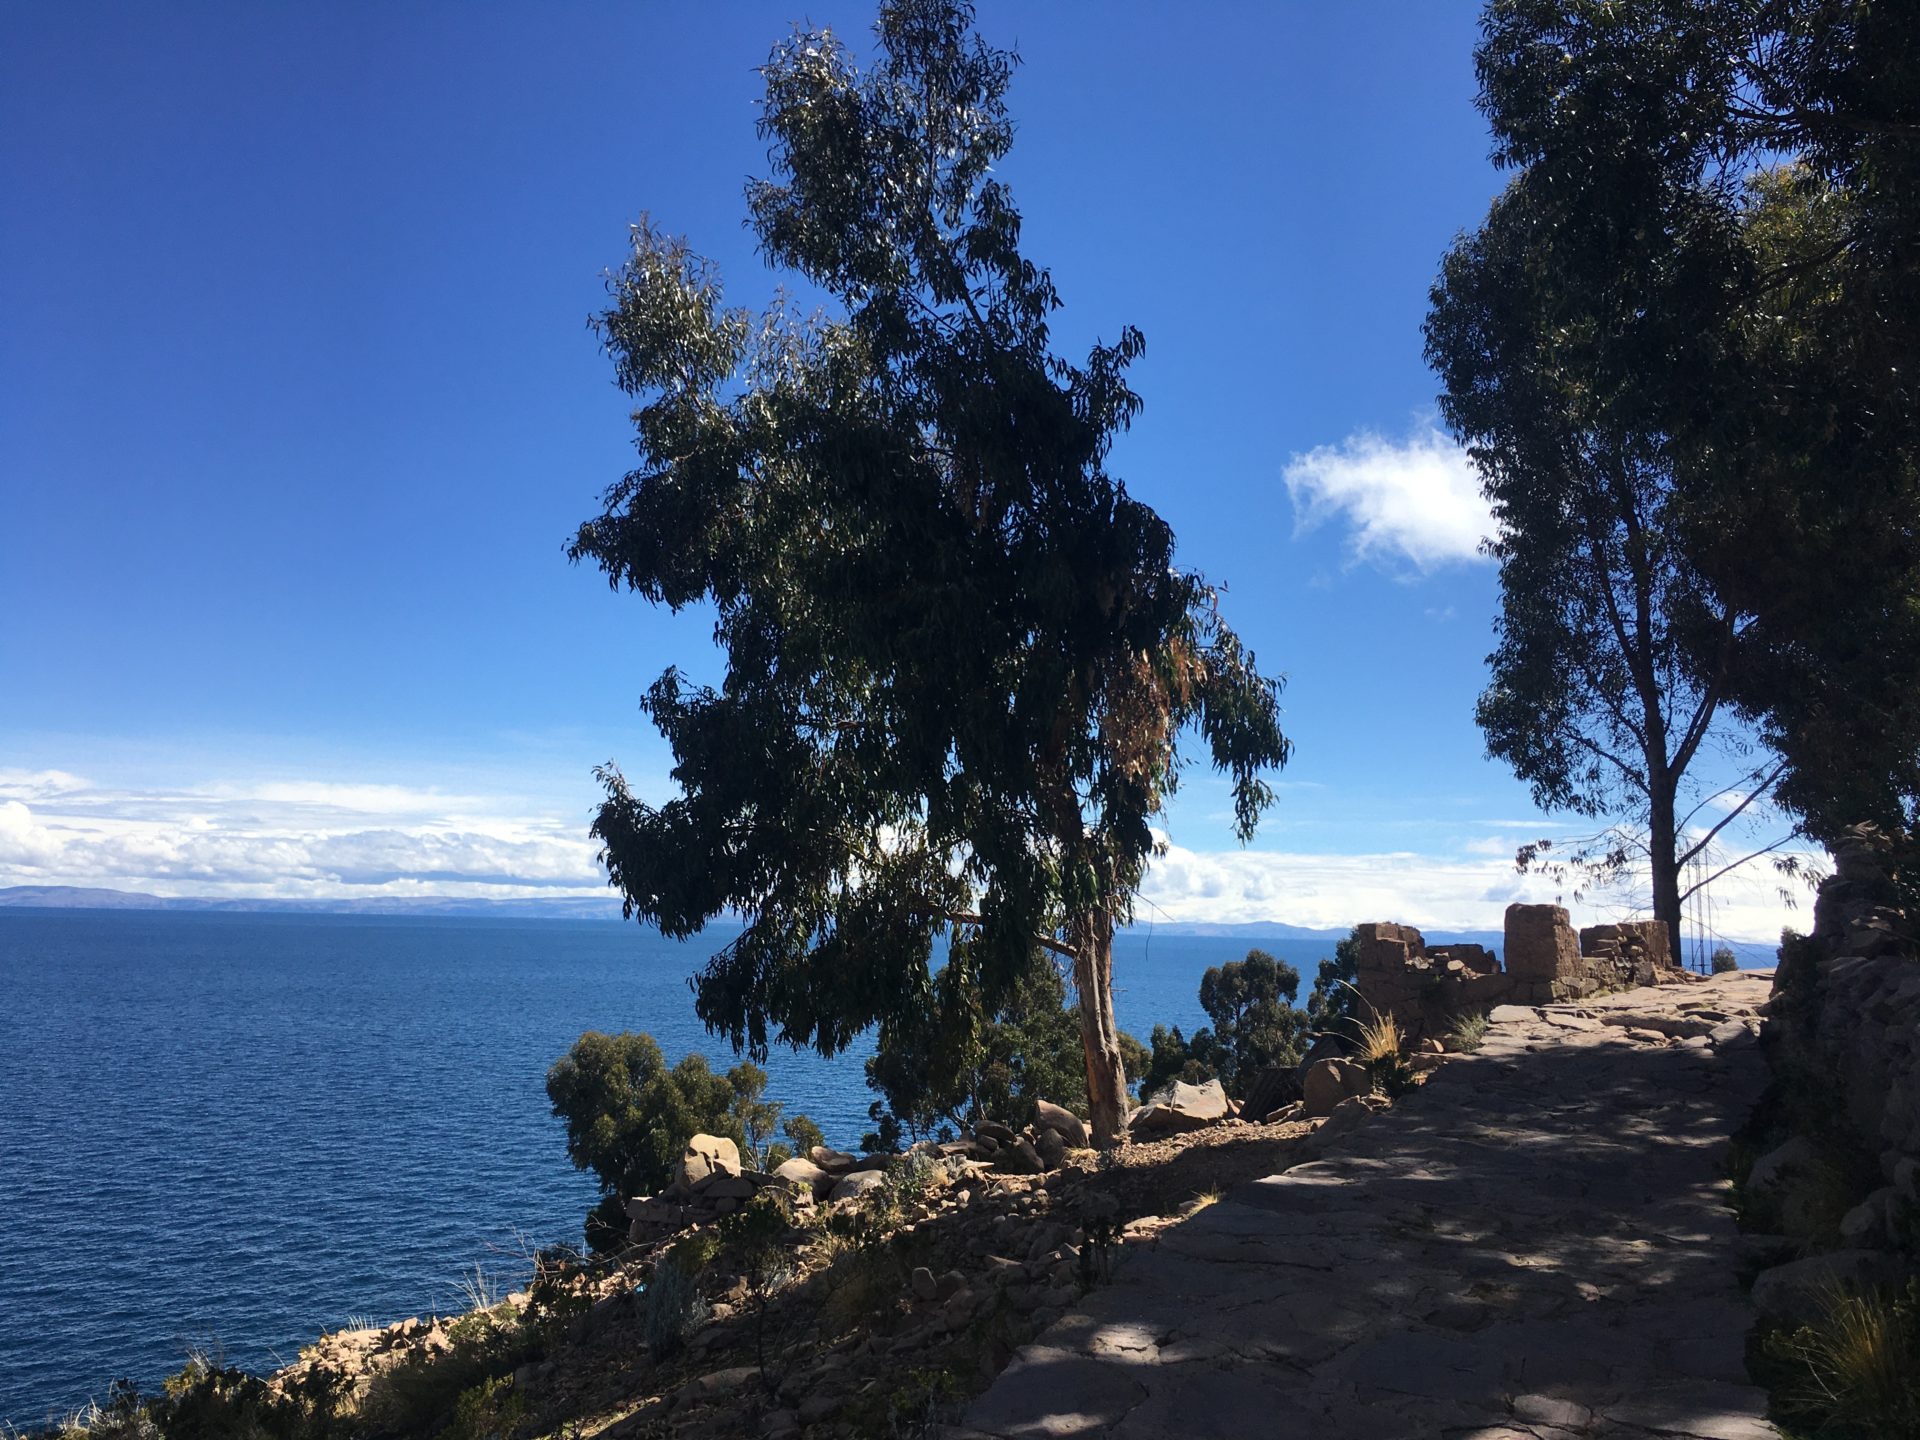 プーノ, チチカカ, 観光, Titicaca, Puno, タキーレ, Taquile